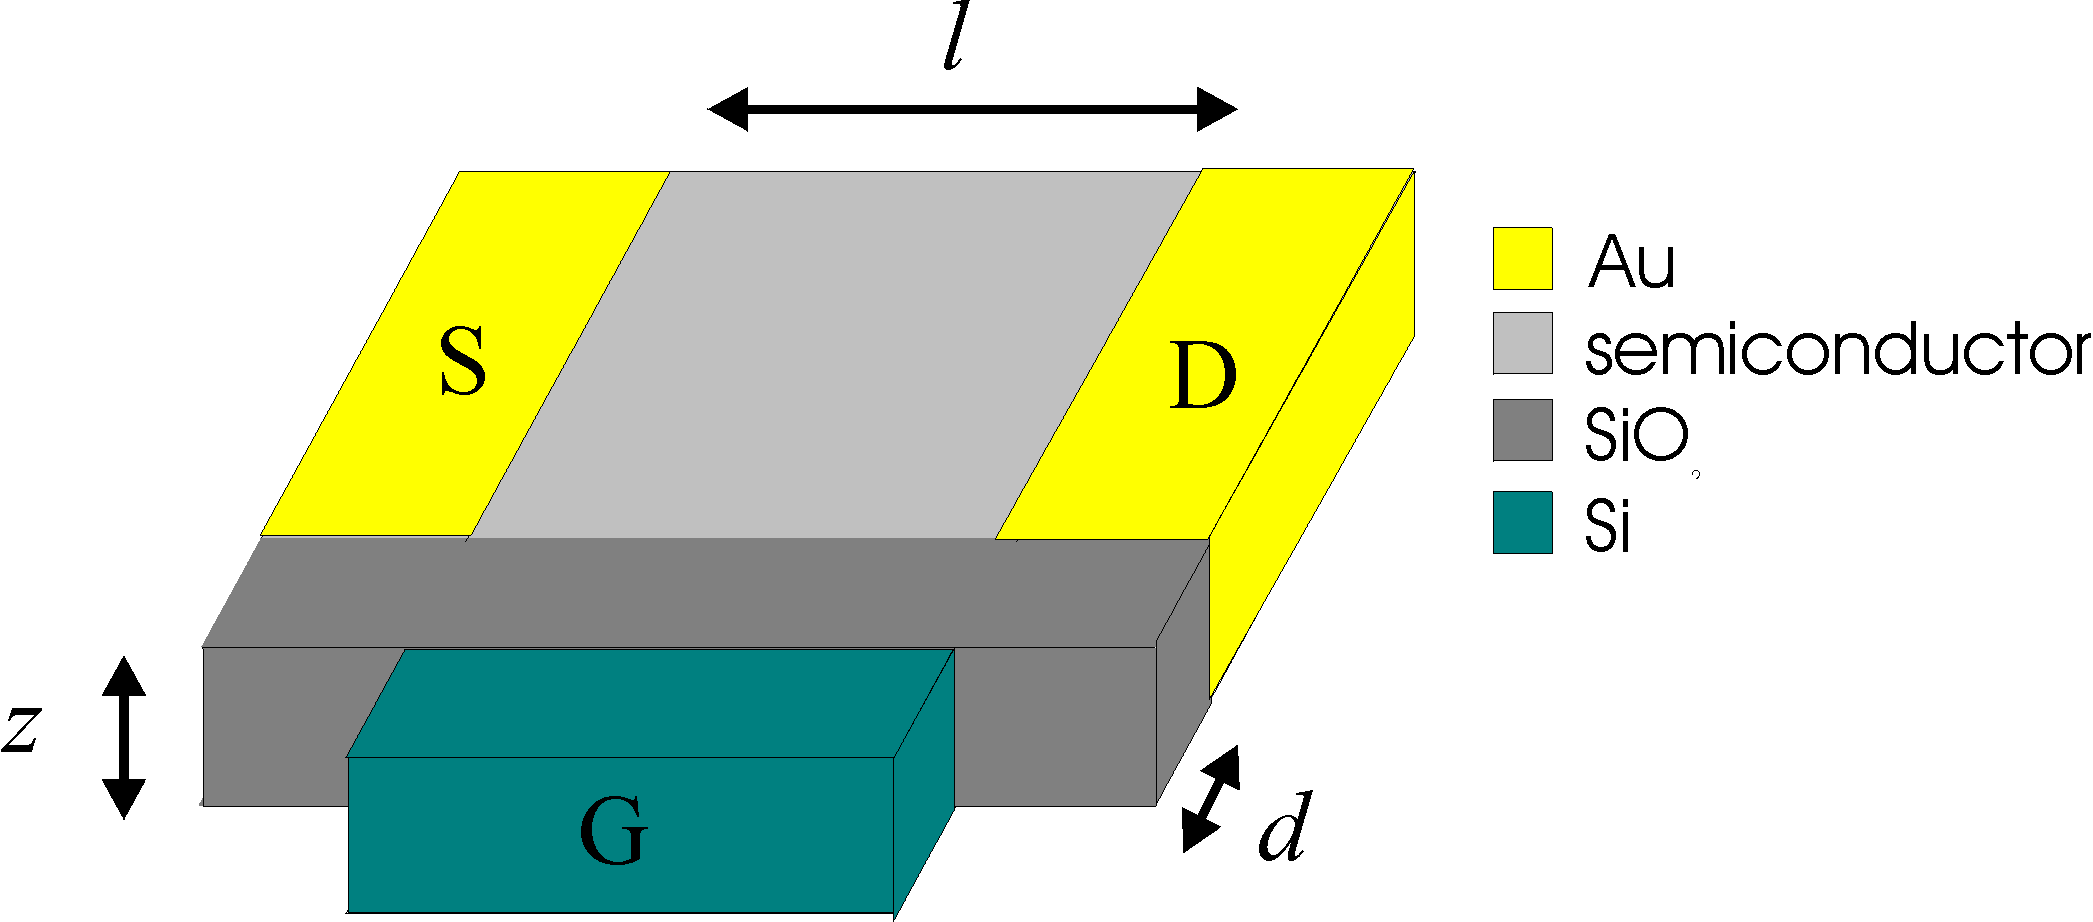 cross-section of an FET